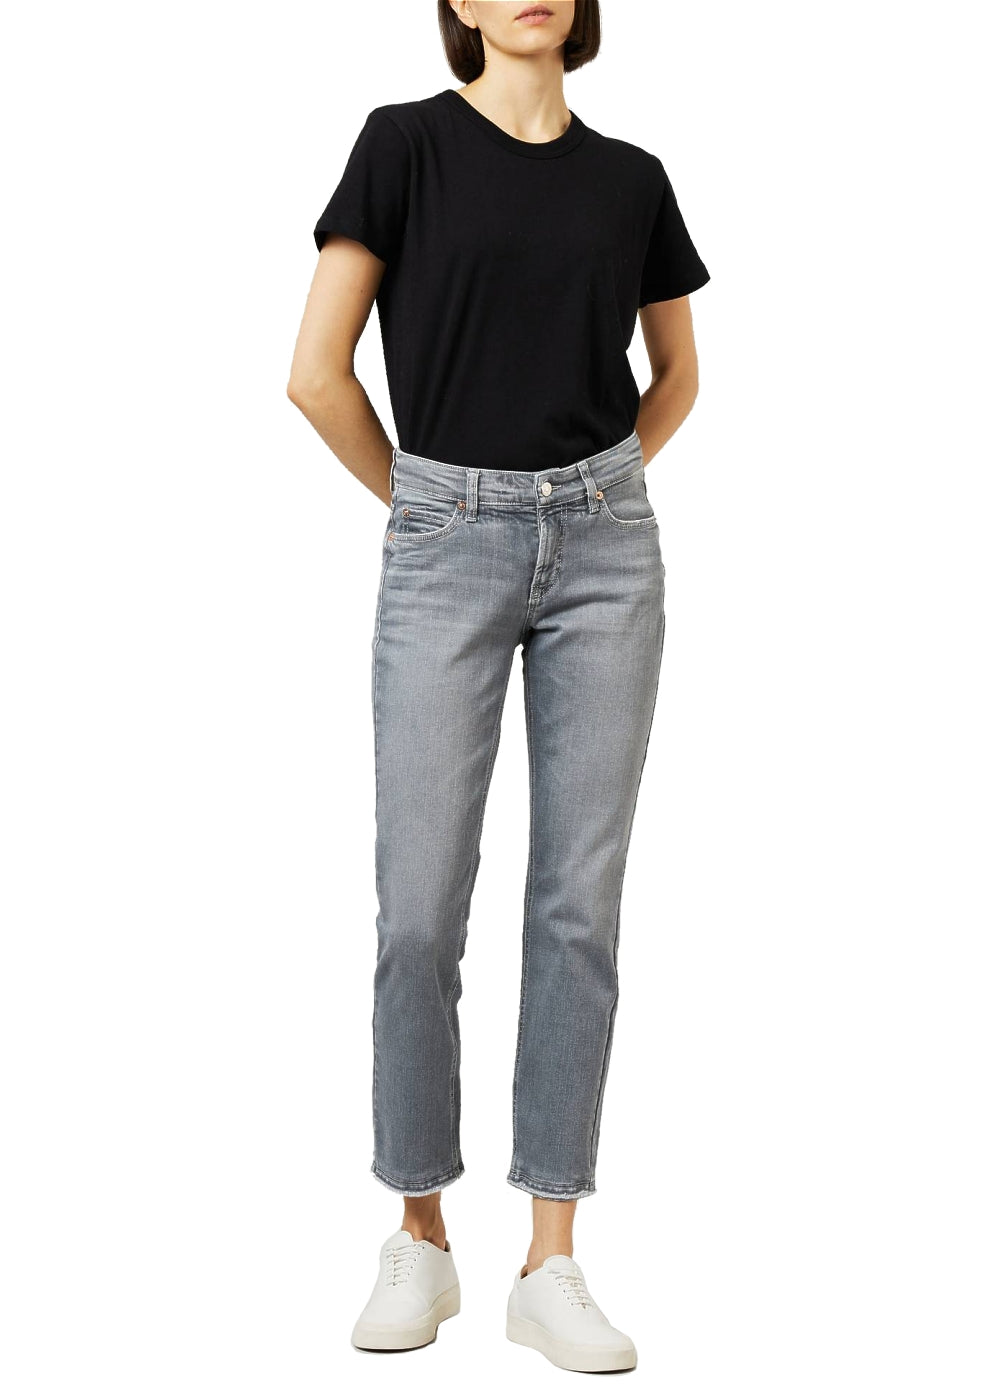 Cambio Jeans Paris in grau. Schmale 5-Pocket Hose in weicher Denimqualität von Cambio. Slim fit Jeans mit cropped Länge und offenkantigem Abschluss aus der neuen Cambio Kollektion.